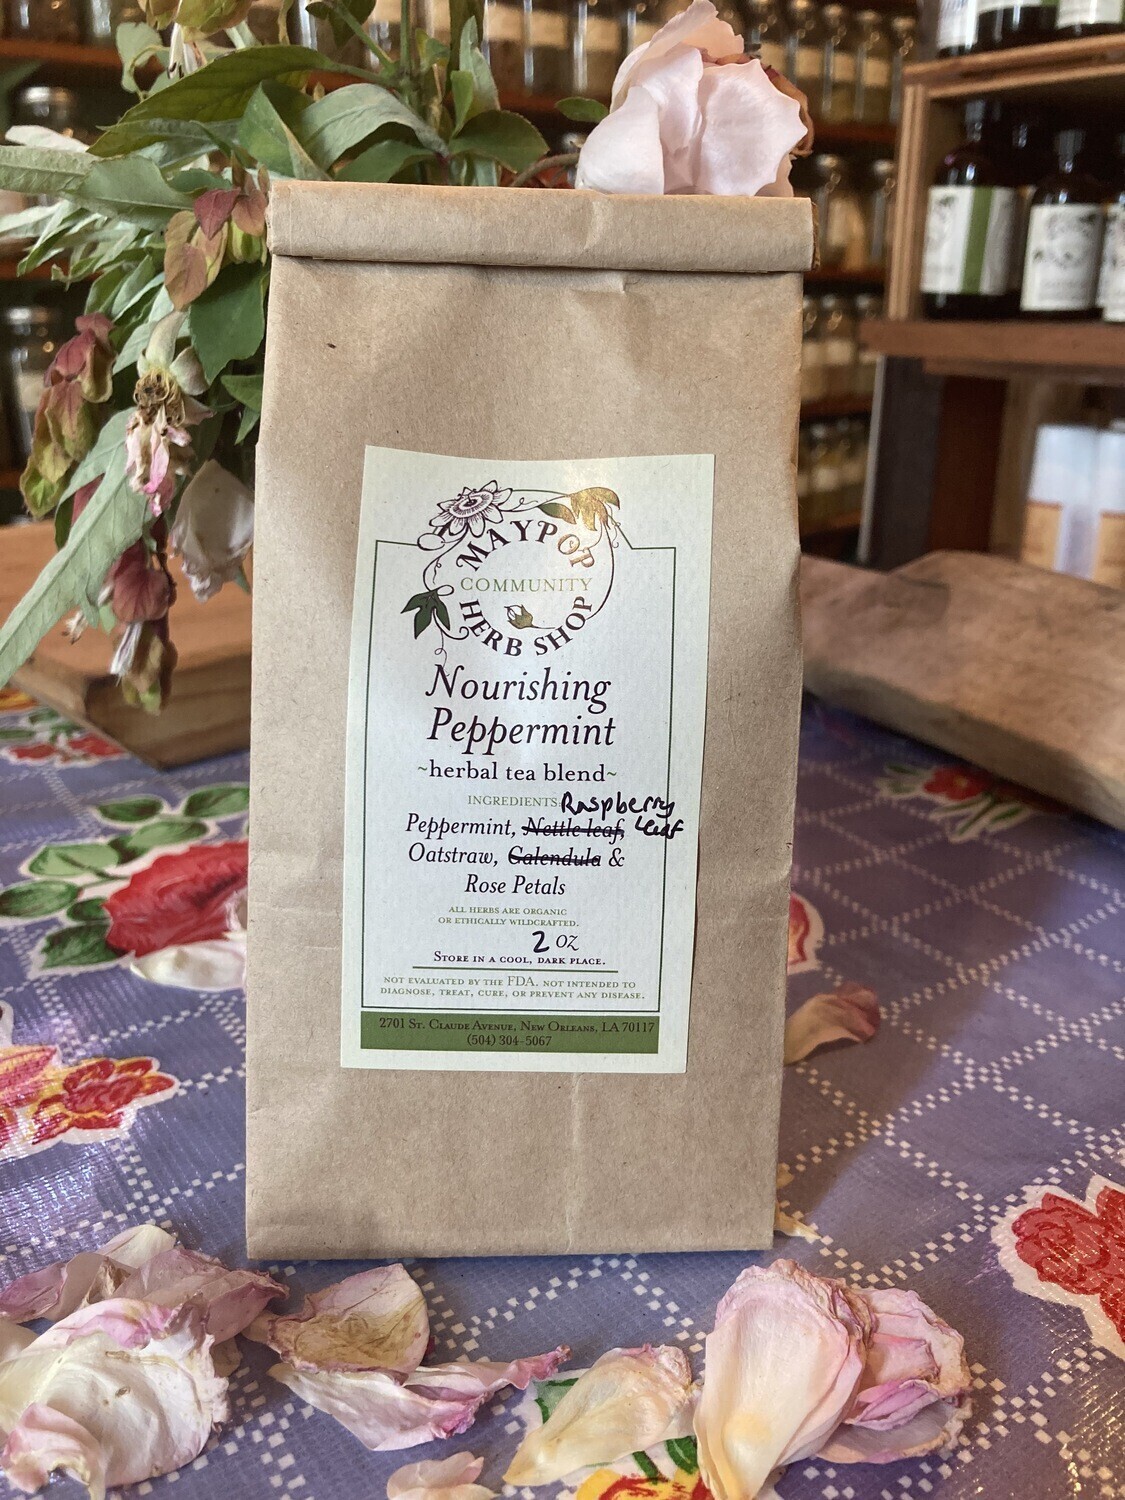 Nourishing Peppermint Tea by Maypop